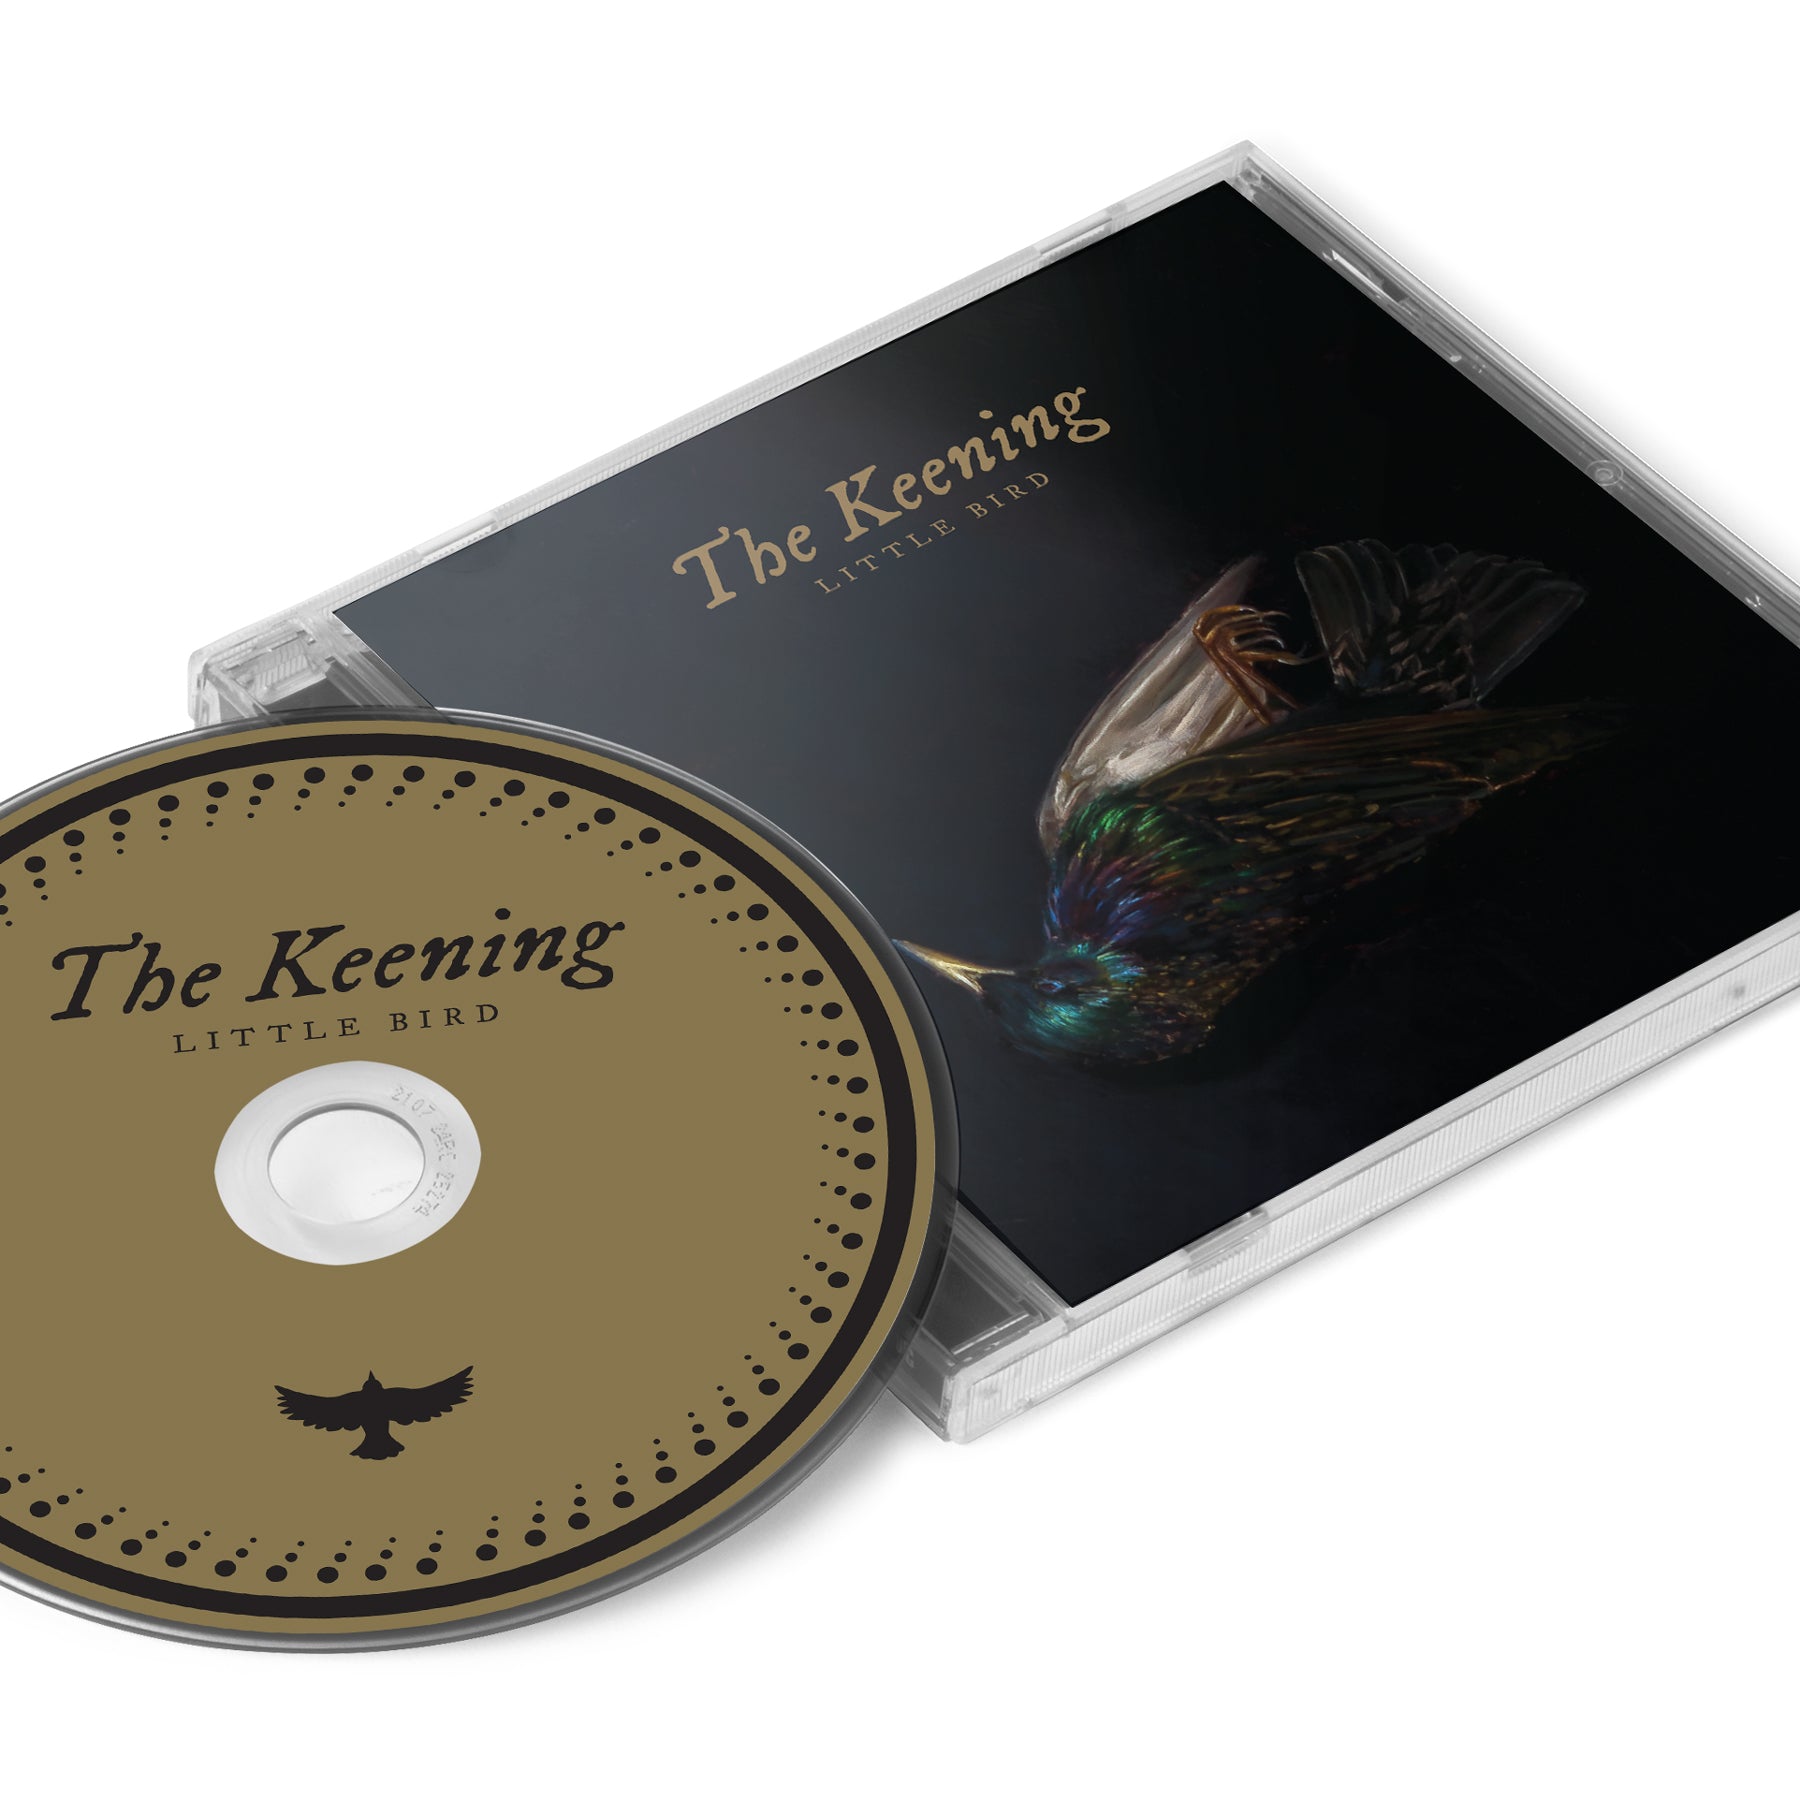 The Keening "Little Bird" CD